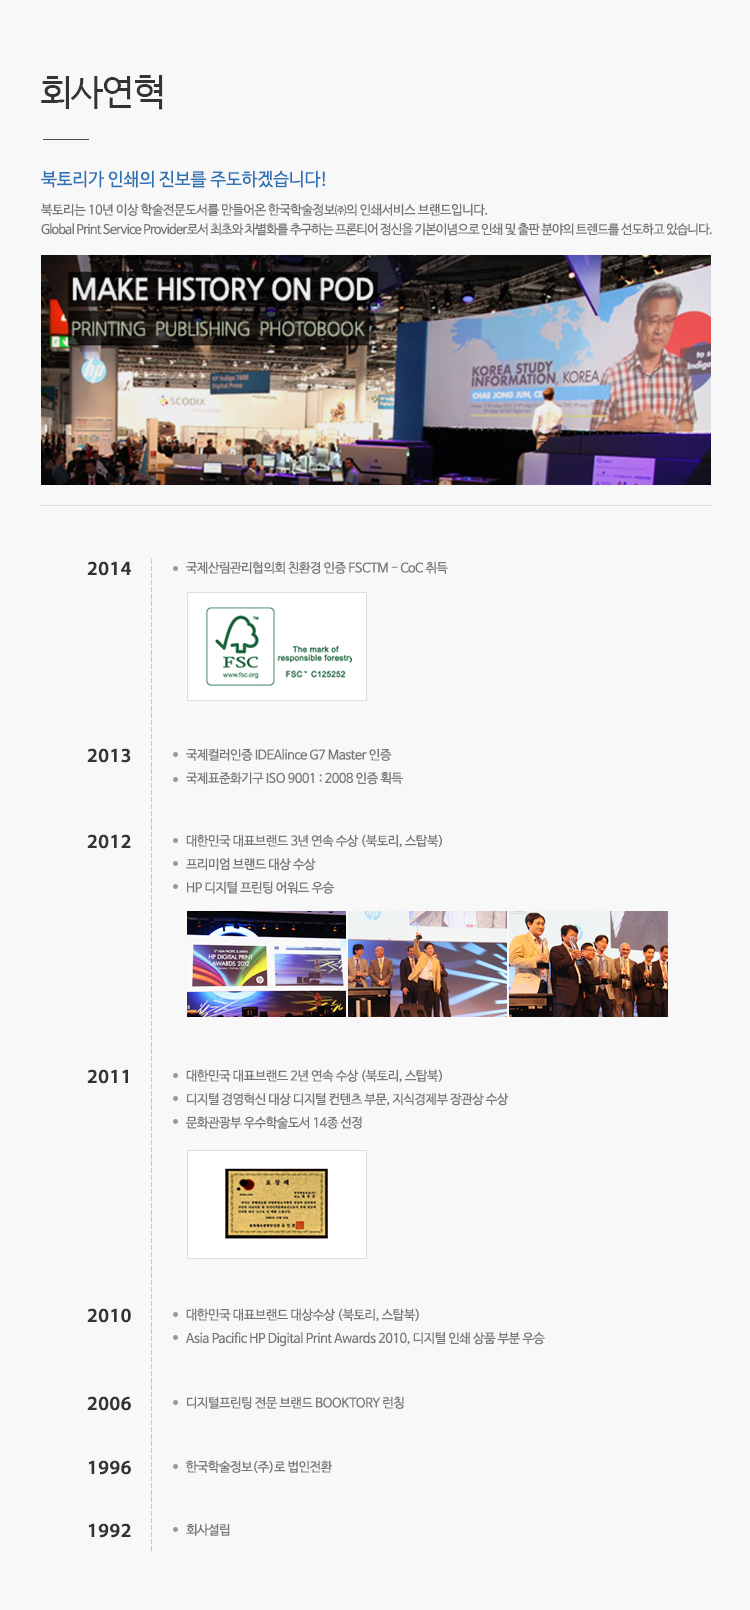 북토리는 10년 이상 학술점문도서를 만들어온 한국학술정보의 인쇄서비스 브랜드입니다.